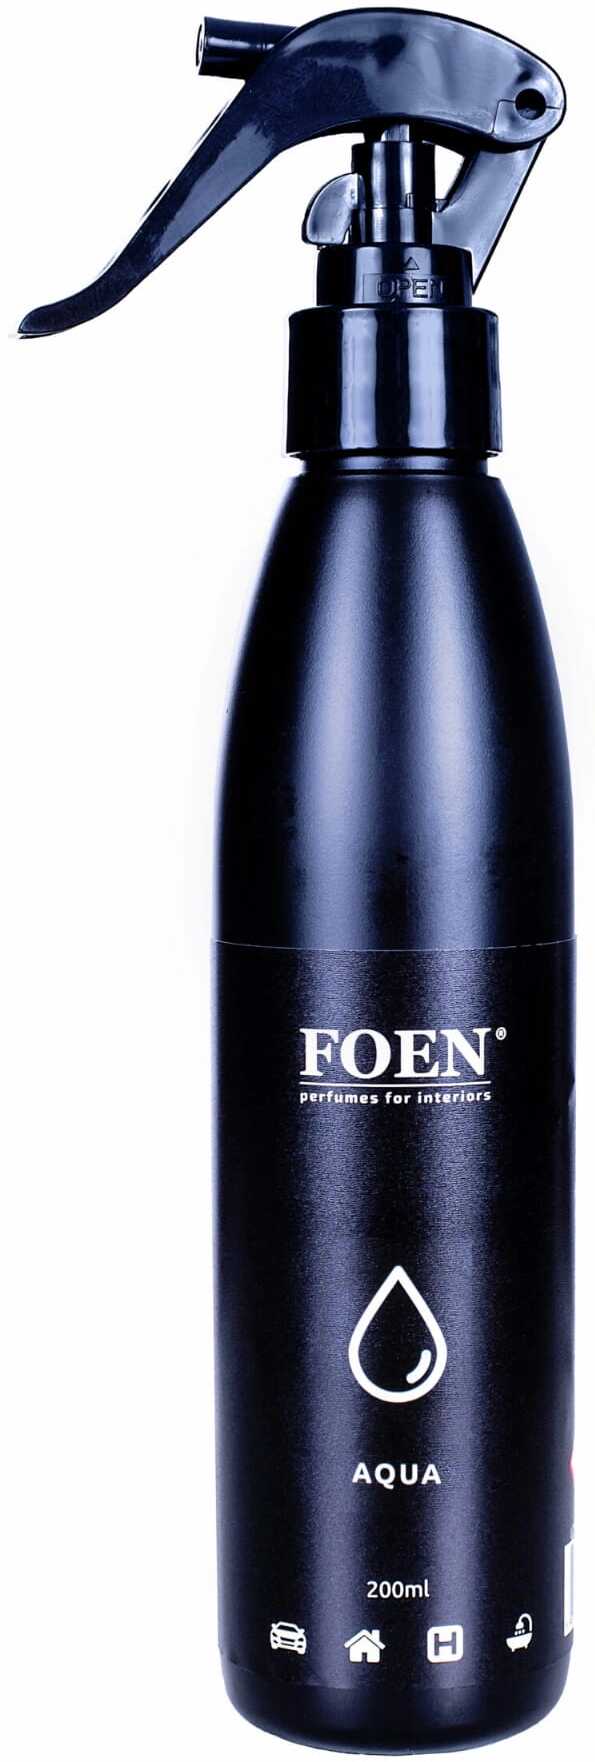 Foen Aqua  perfumy samochodowe, orzeźwiający zapach 200ml